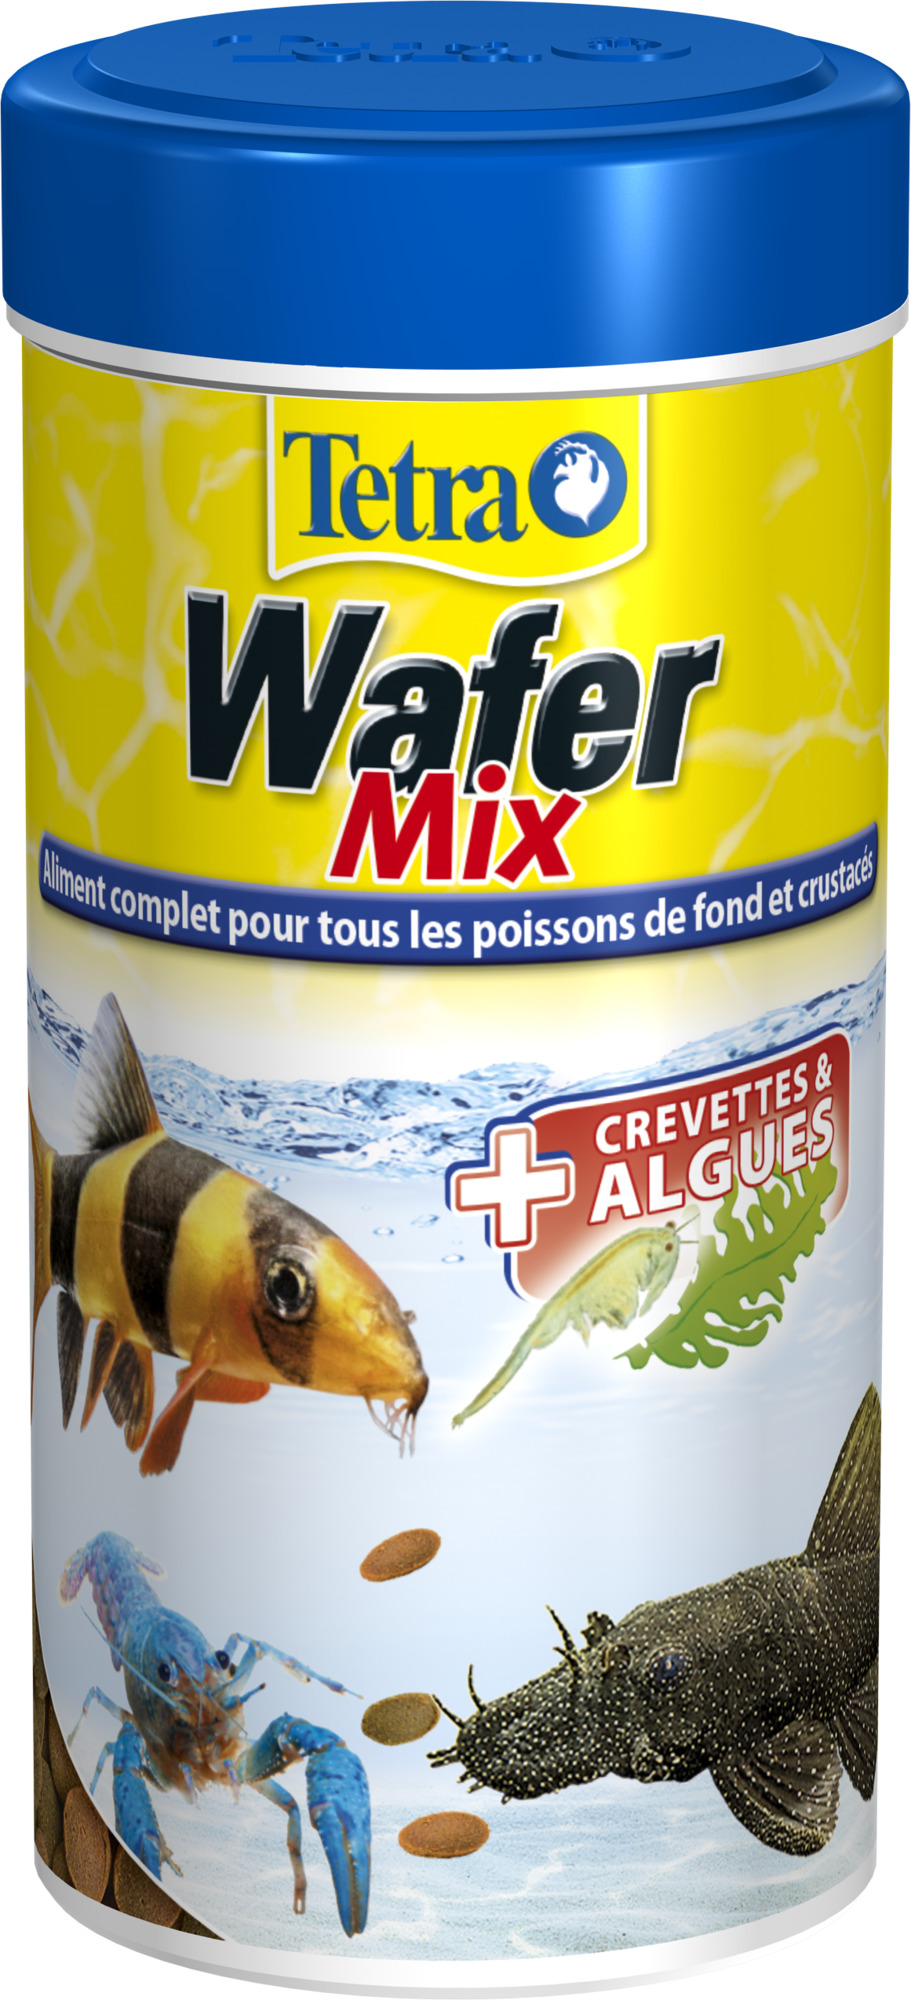 TETRA WaferMix 250 ml aliment complet pour les petits poissons de fond herbivores et carnivores ainsi que pour les crustacés